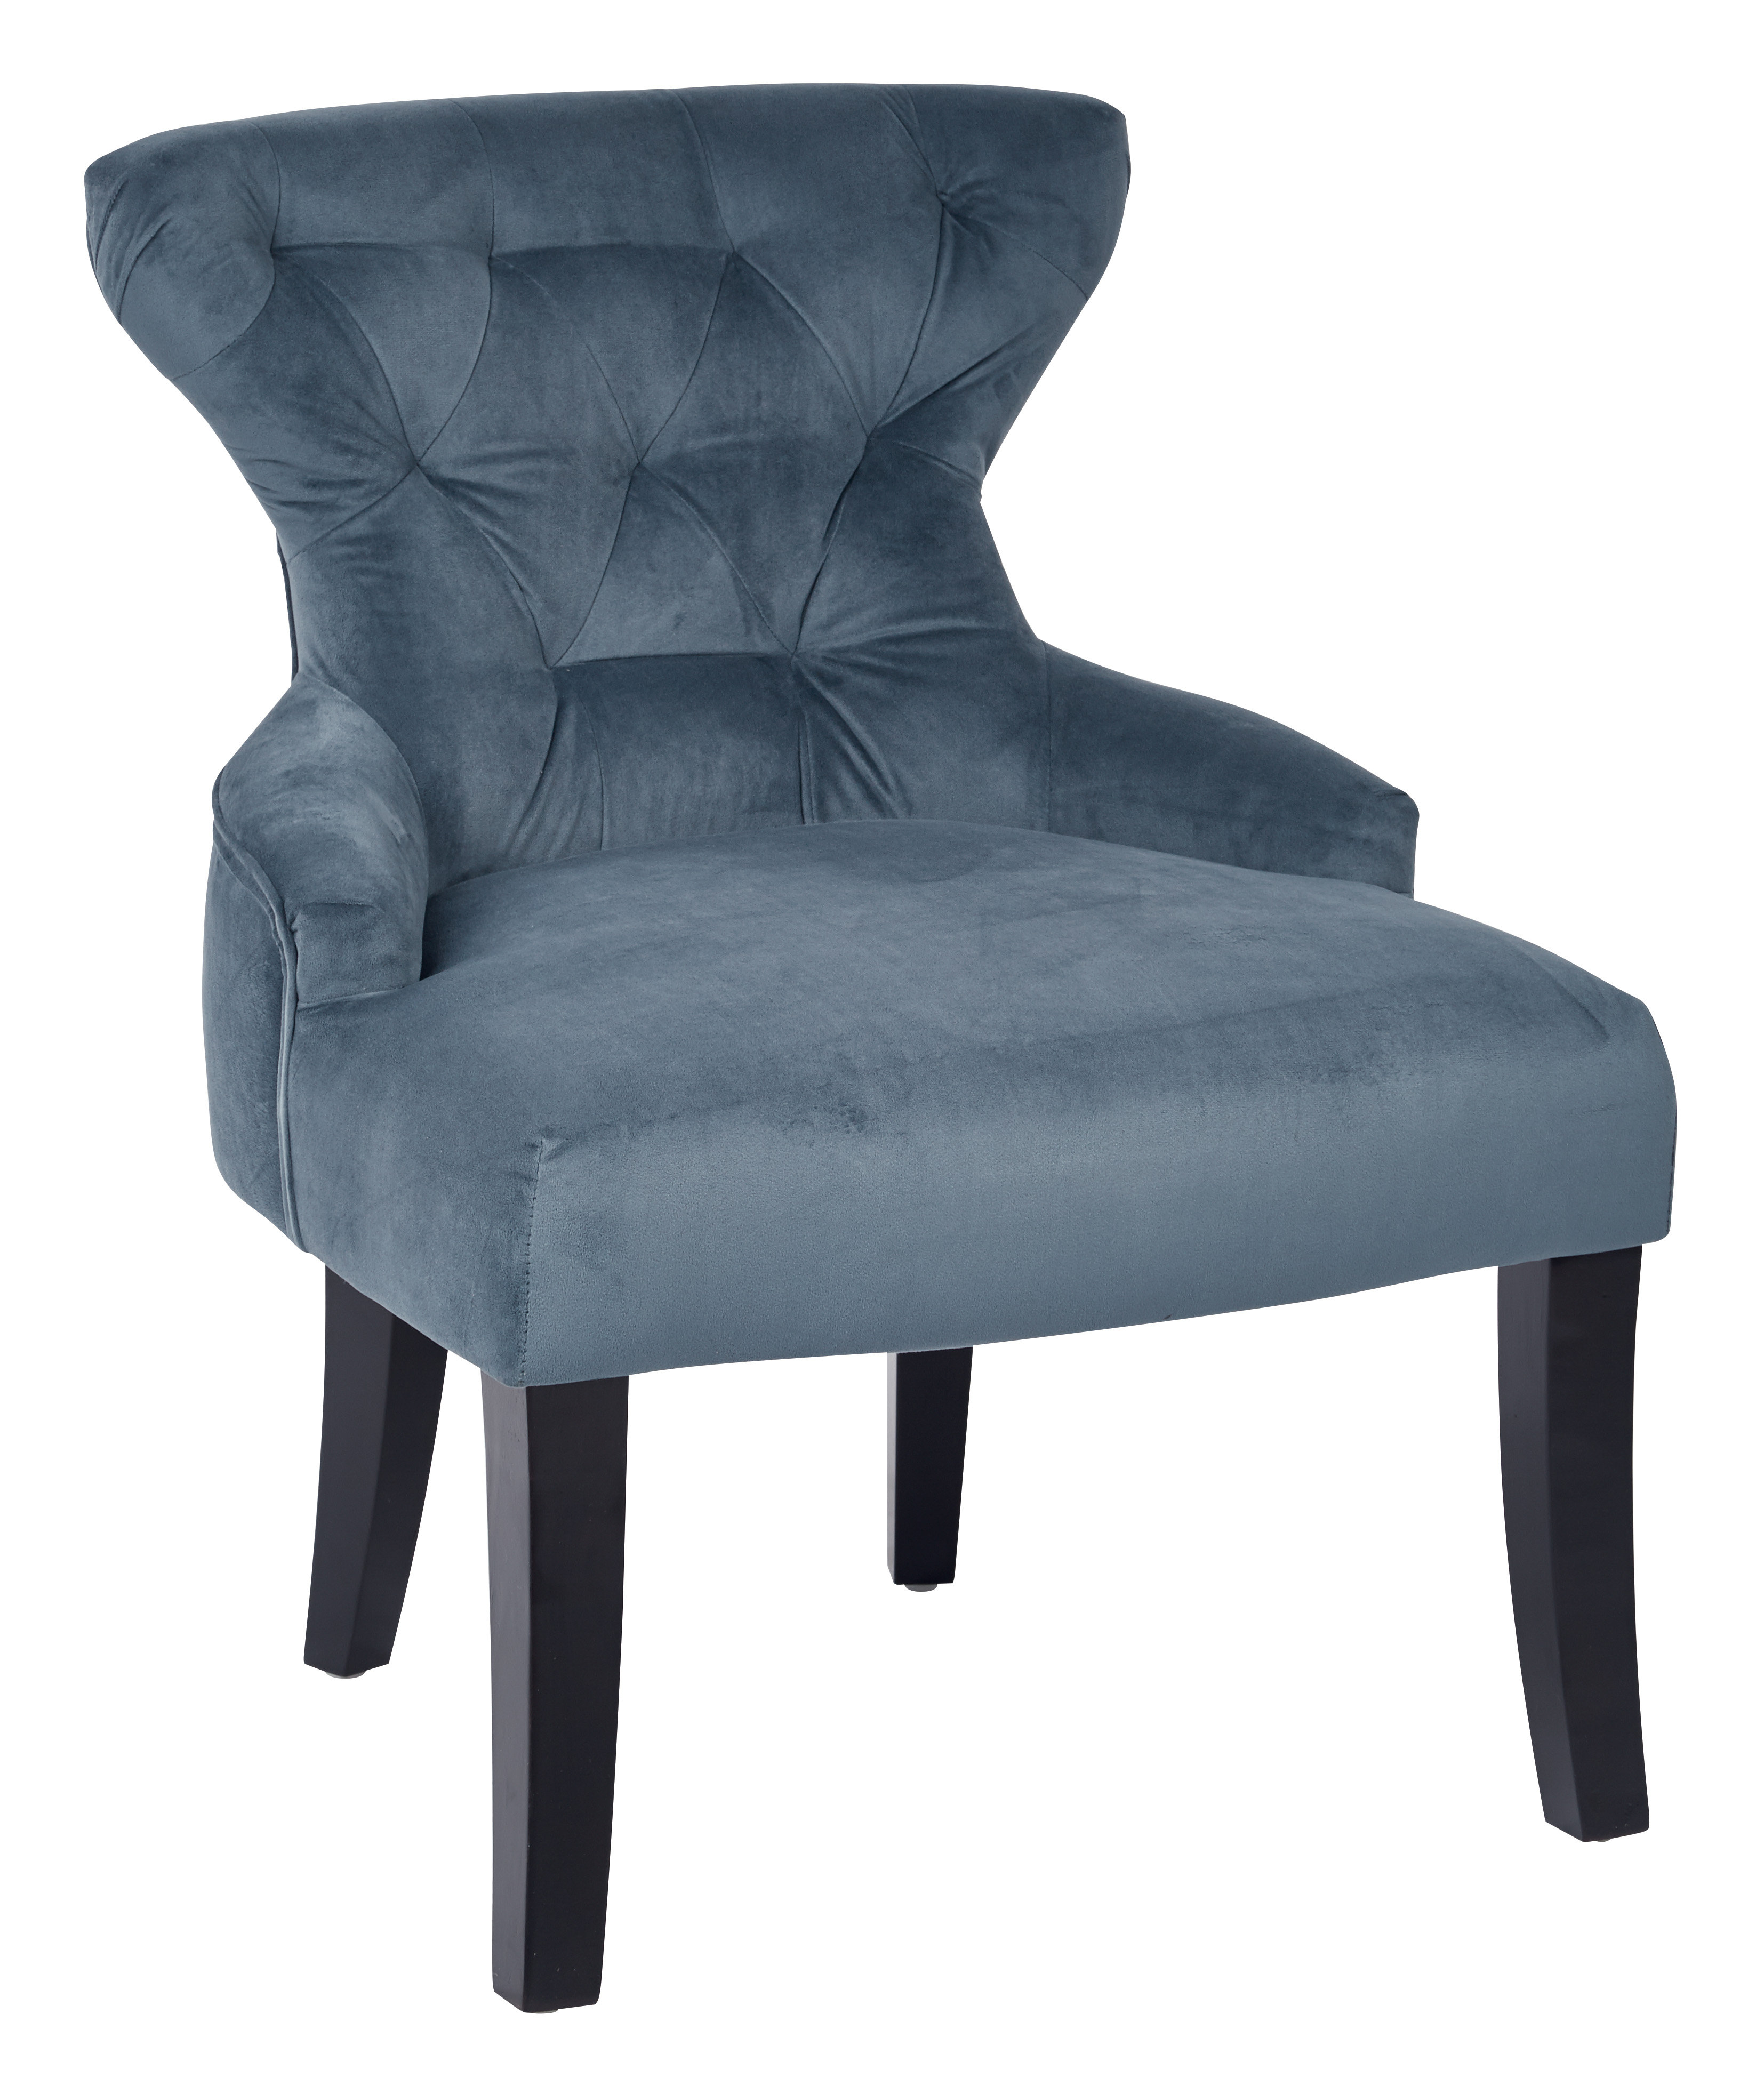 Dorazio 25.5” Wide Tufted Wingback Chair